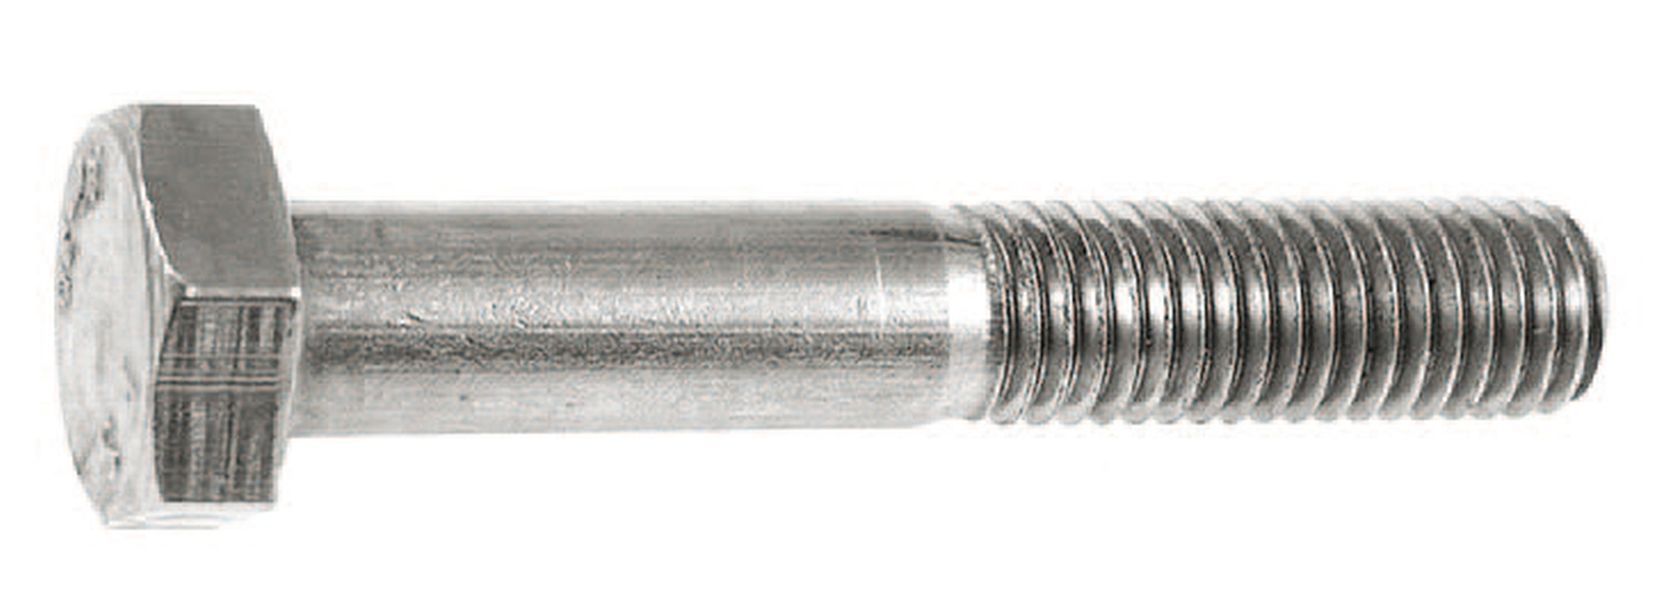 Six core screws - M6 x 35 mm - 6 pcs. - V4A - shaft